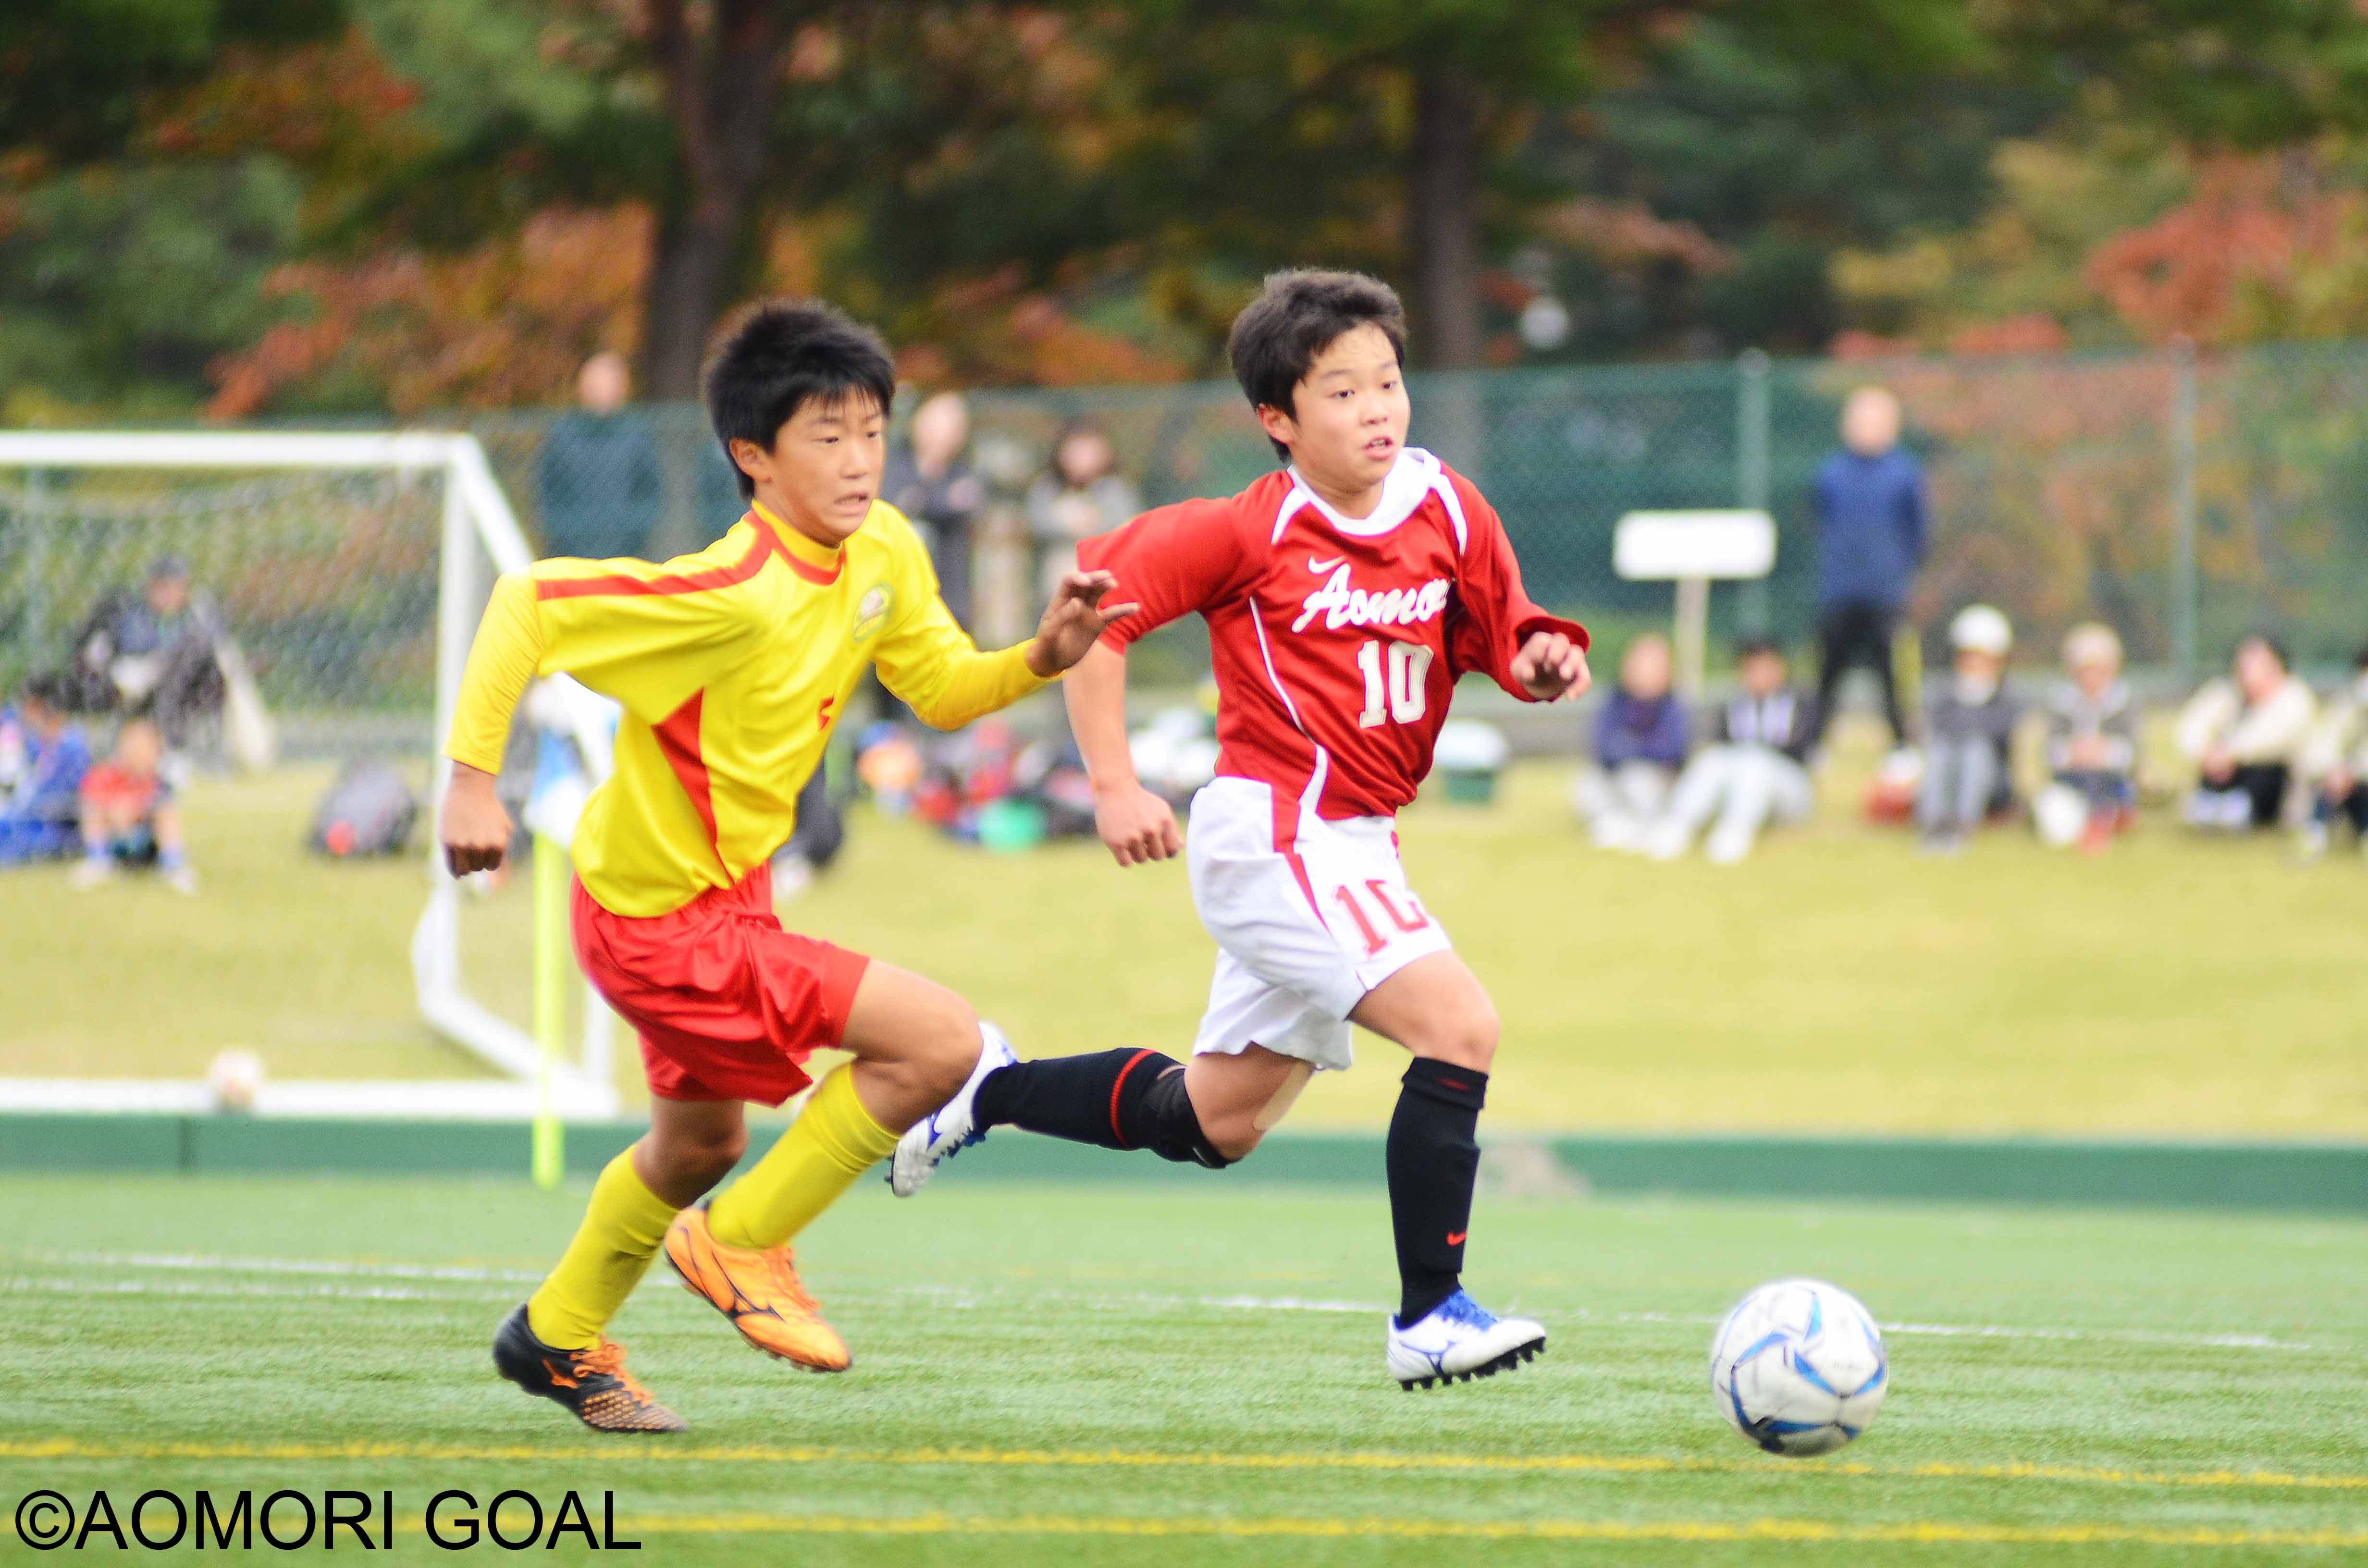 4種 小学生 大会情報 青森ゴール Aomori Goal 青森県サッカー フットサルマガジン